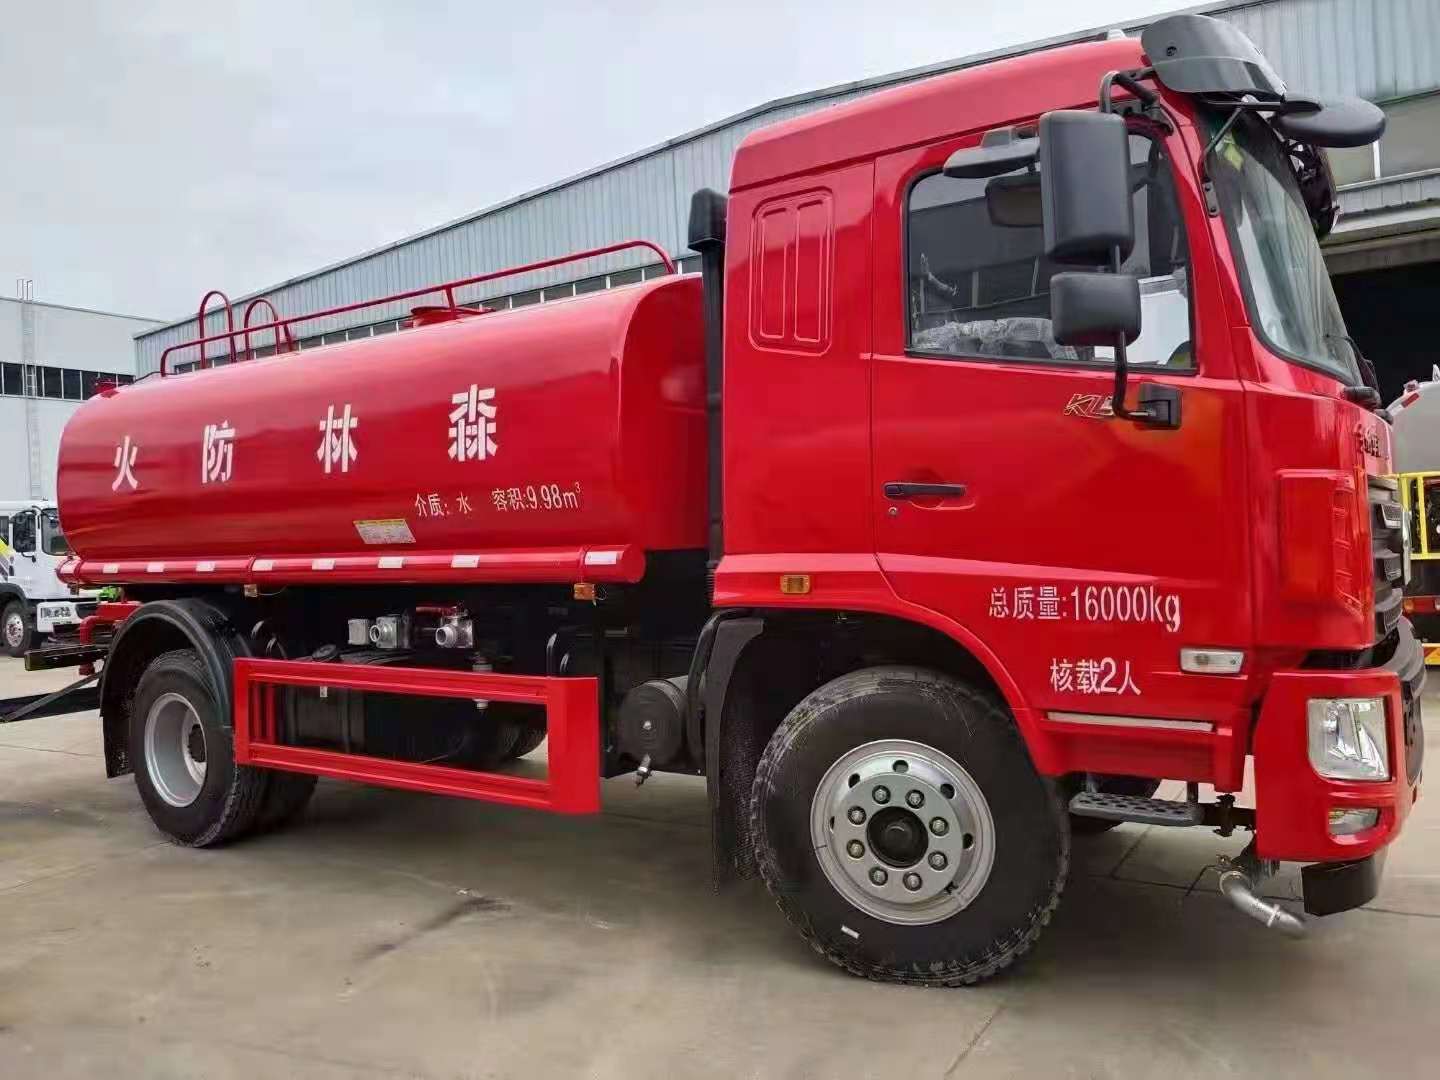 吐鲁番5吨水罐消防车